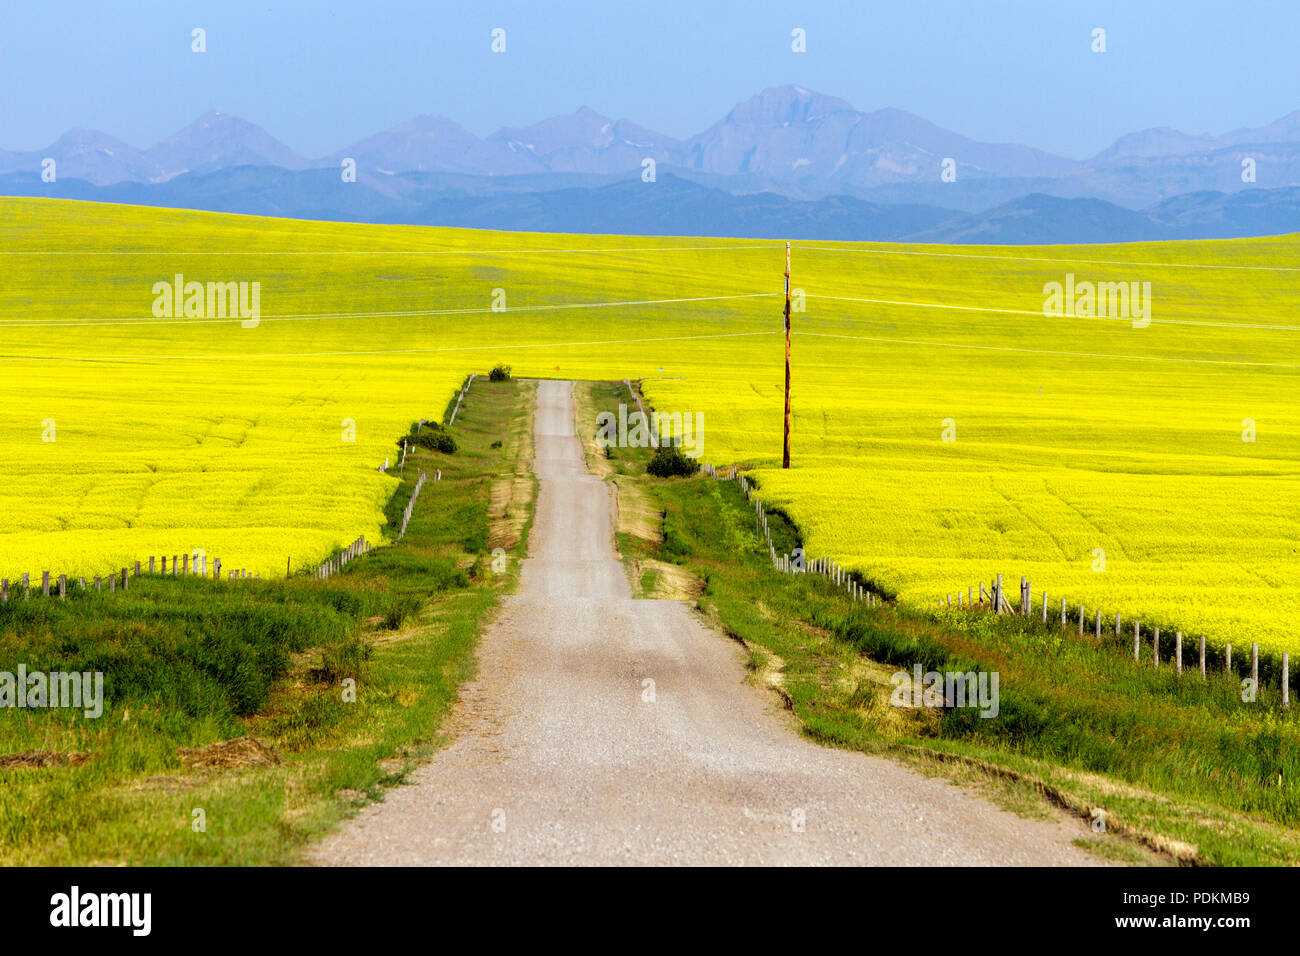 Un país rural carretera escénica del paisaje rodeado por un campo de colza amarillos en plena floración en pinzas Creek, Alberta, Canadá. Foto de stock